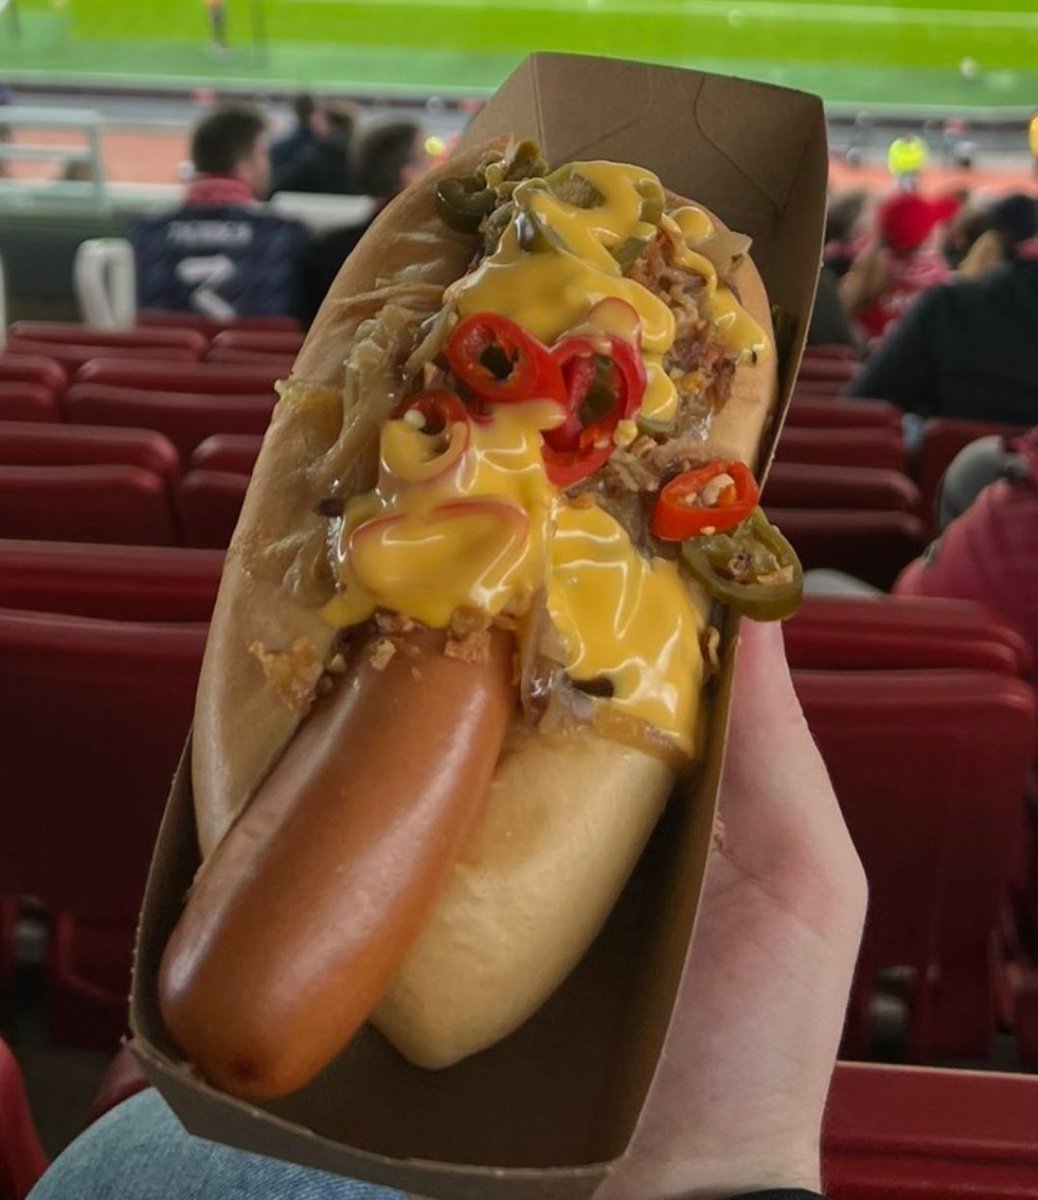 Arsenal tribünlerinden: Soslu biberli Hot Dog Fiyat: £8